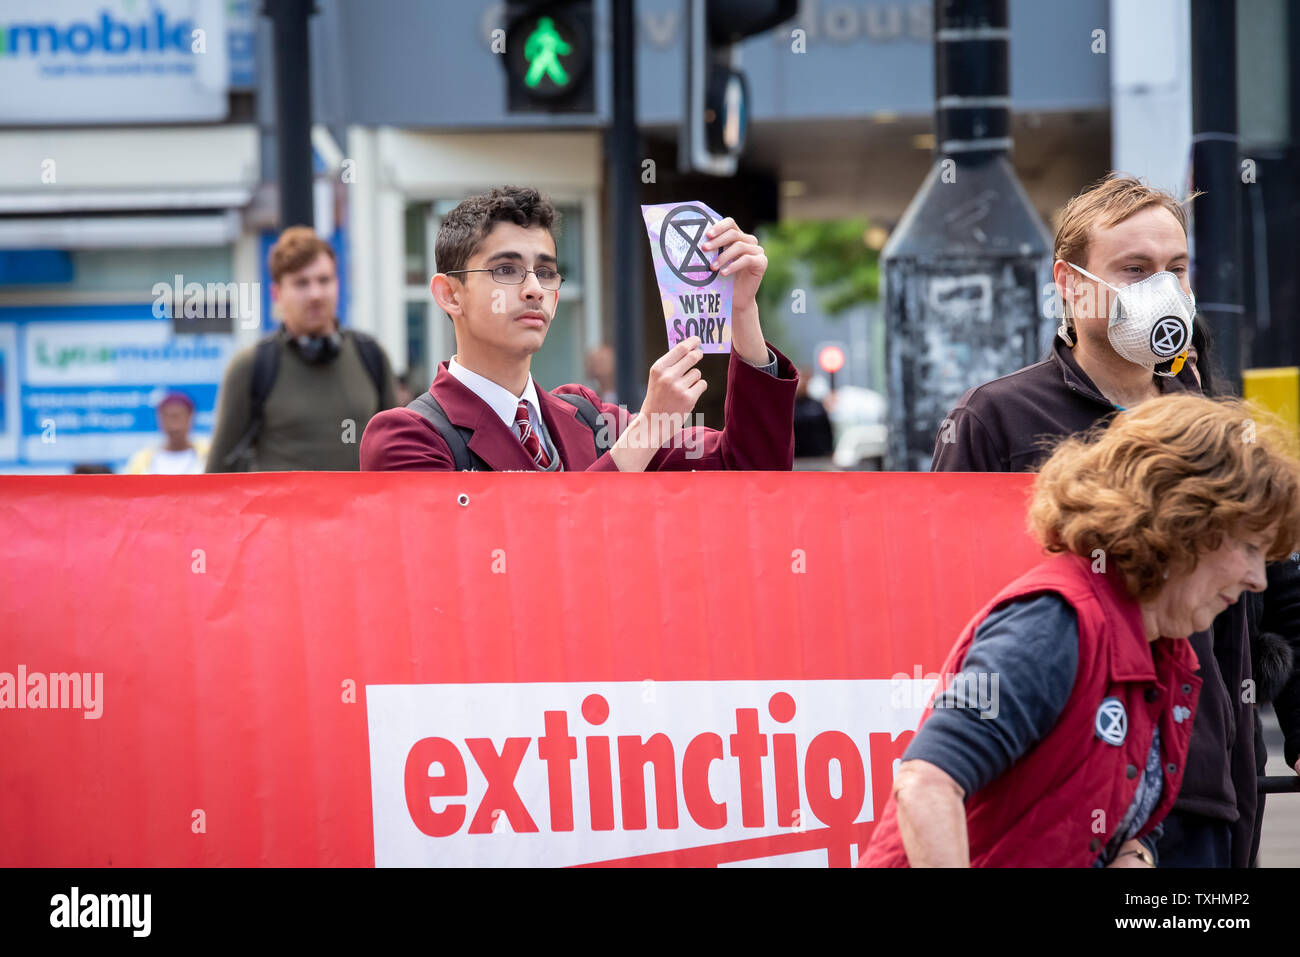 Jeune homme en uniforme d'arrête le trafic de Catford, Londres pour rébellion d'Extinction Banque D'Images